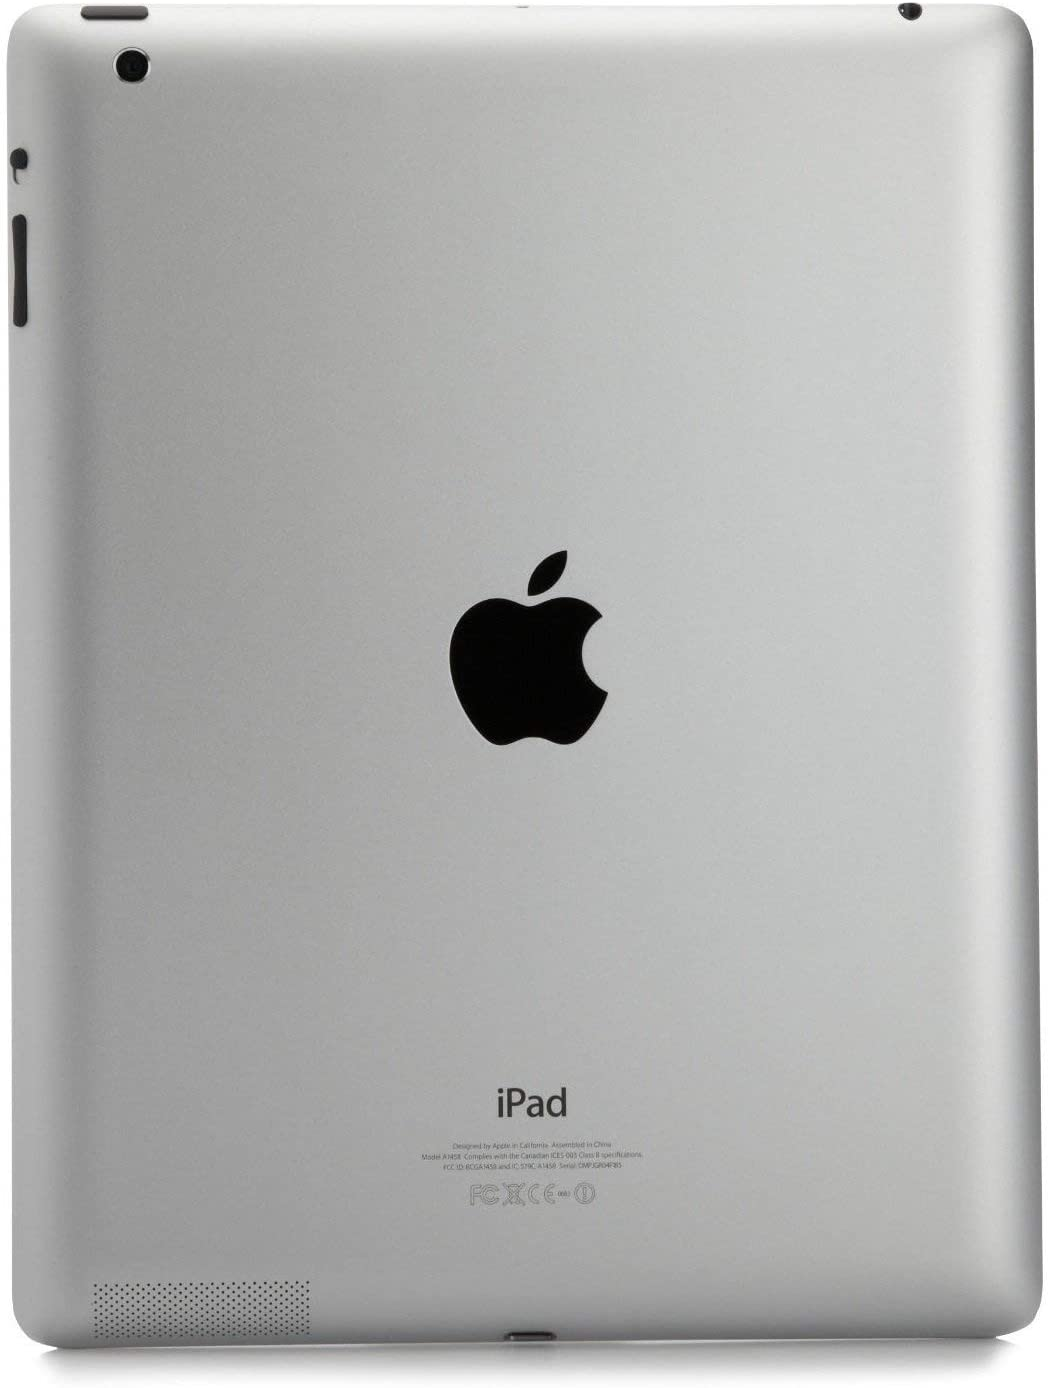 Apple Ipad 2 MC770LL/A Tablet (32GB, Wifi, Black) 2Nd Generation (Renewed)